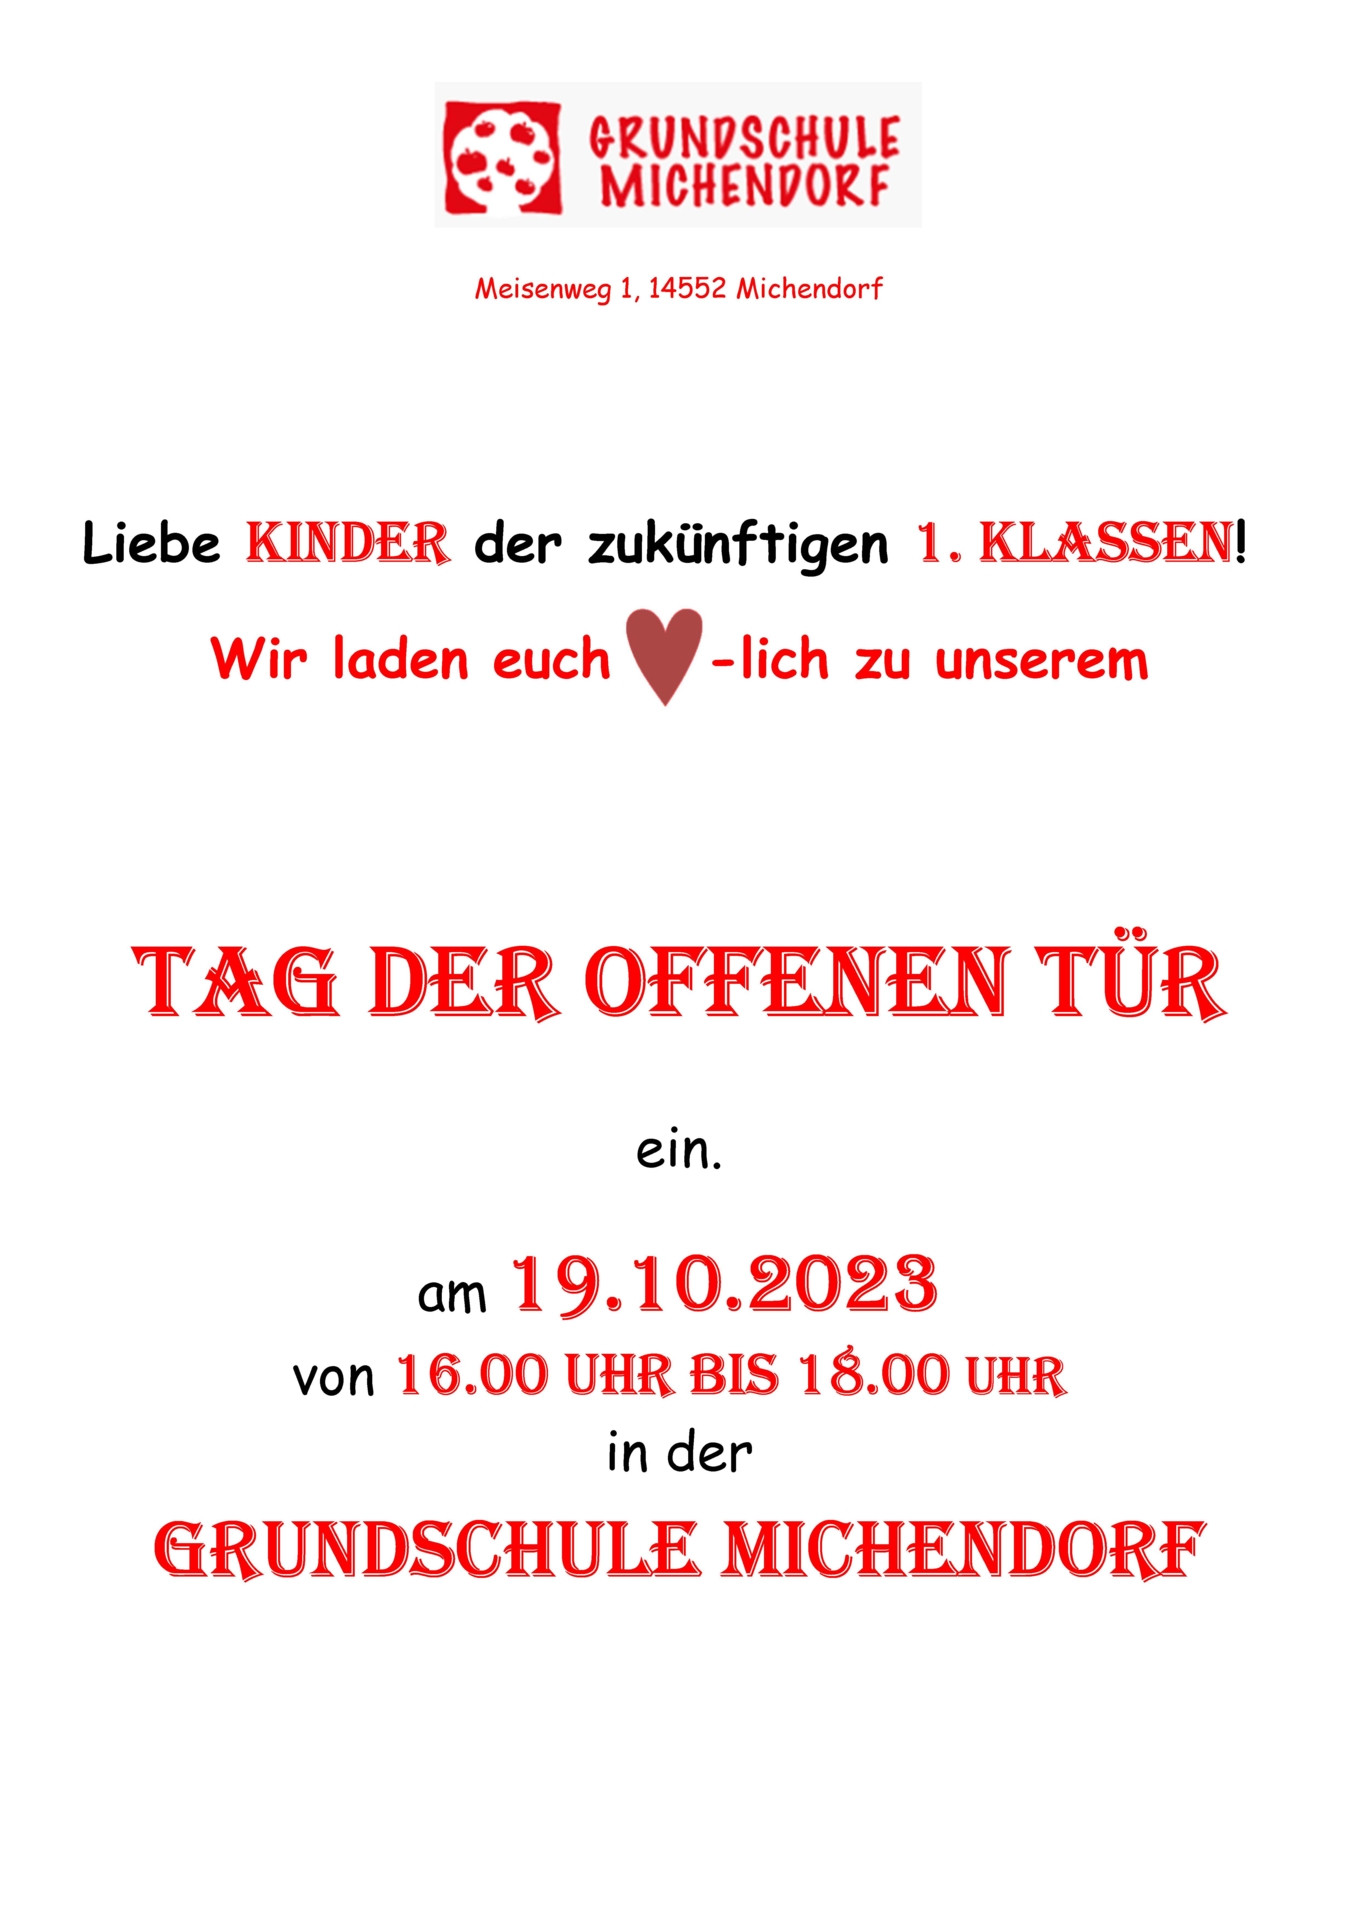 Tag der offenen Tür Grundschule Michendorf 2023